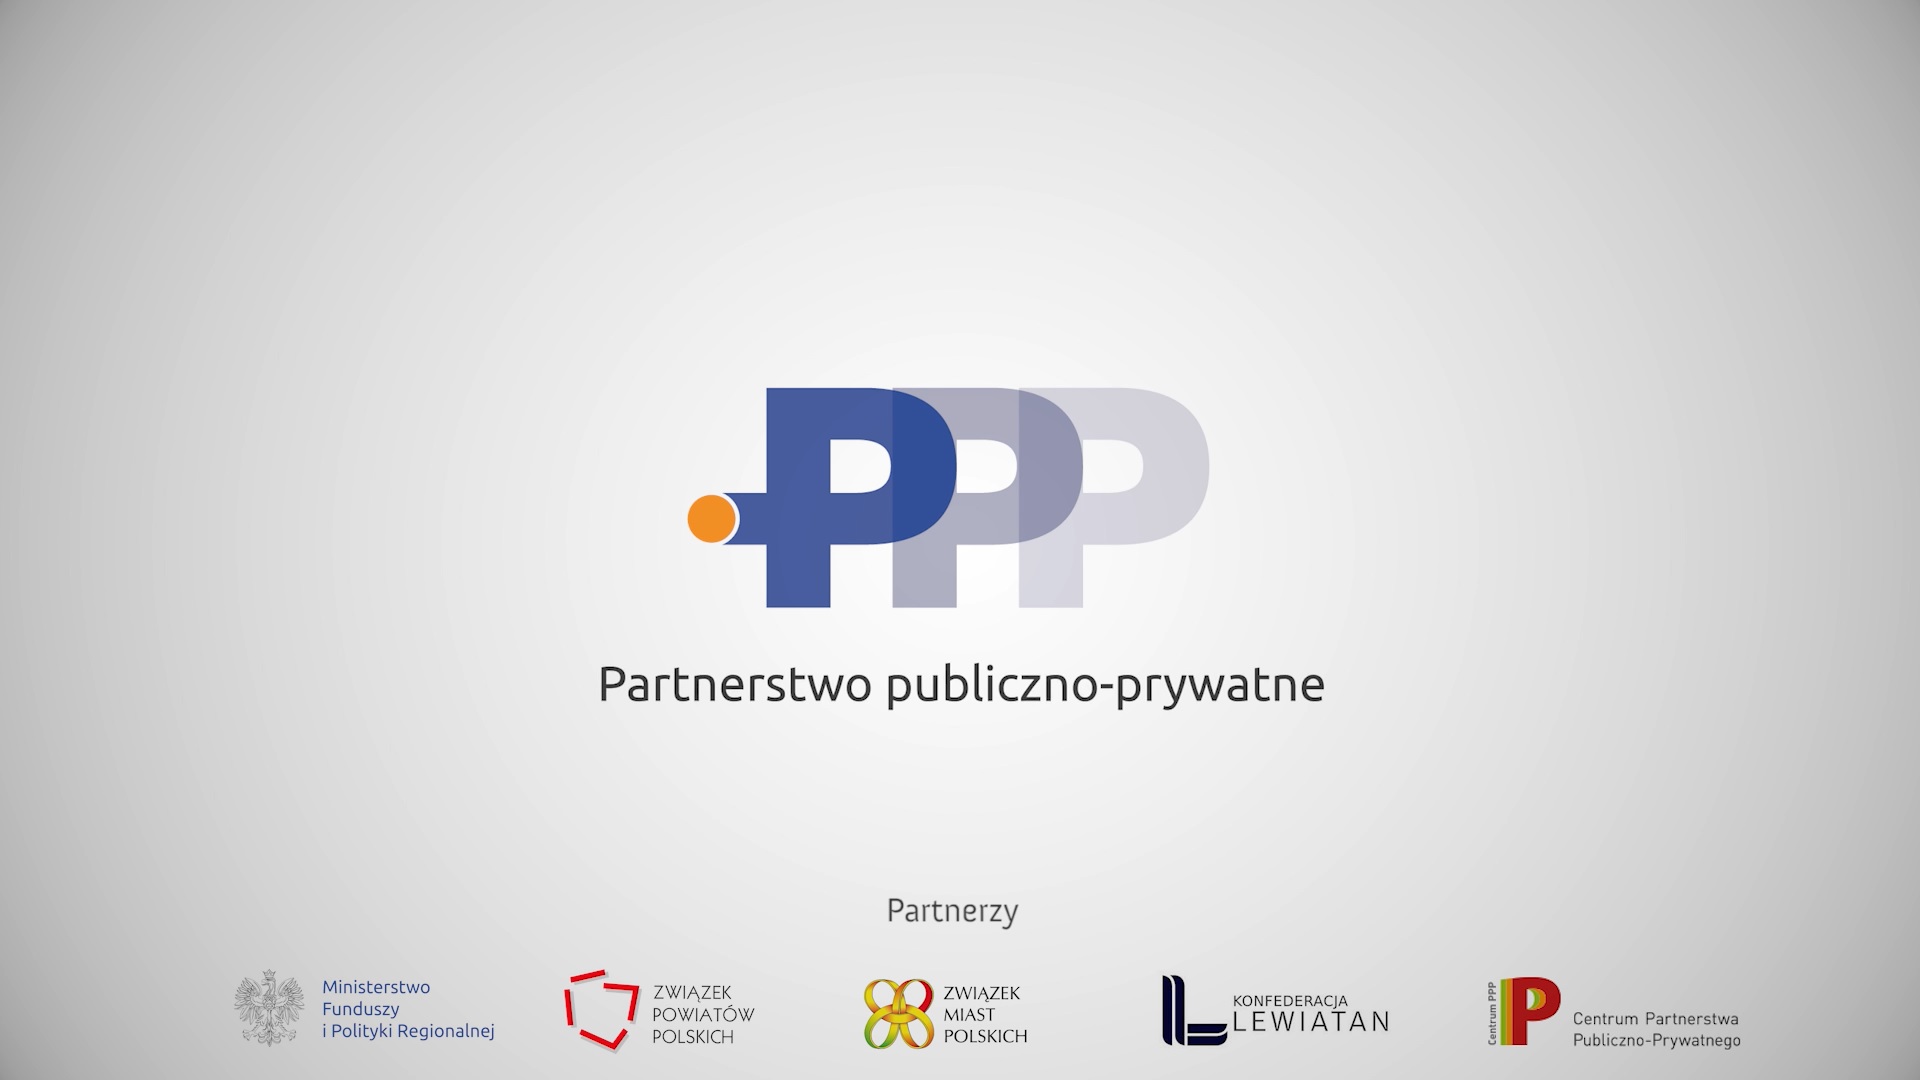 Omówienie idei partnerstwa publiczno-prywatnego oraz wprowadzenie do zagadnień tematycznych. Film wprowadzający